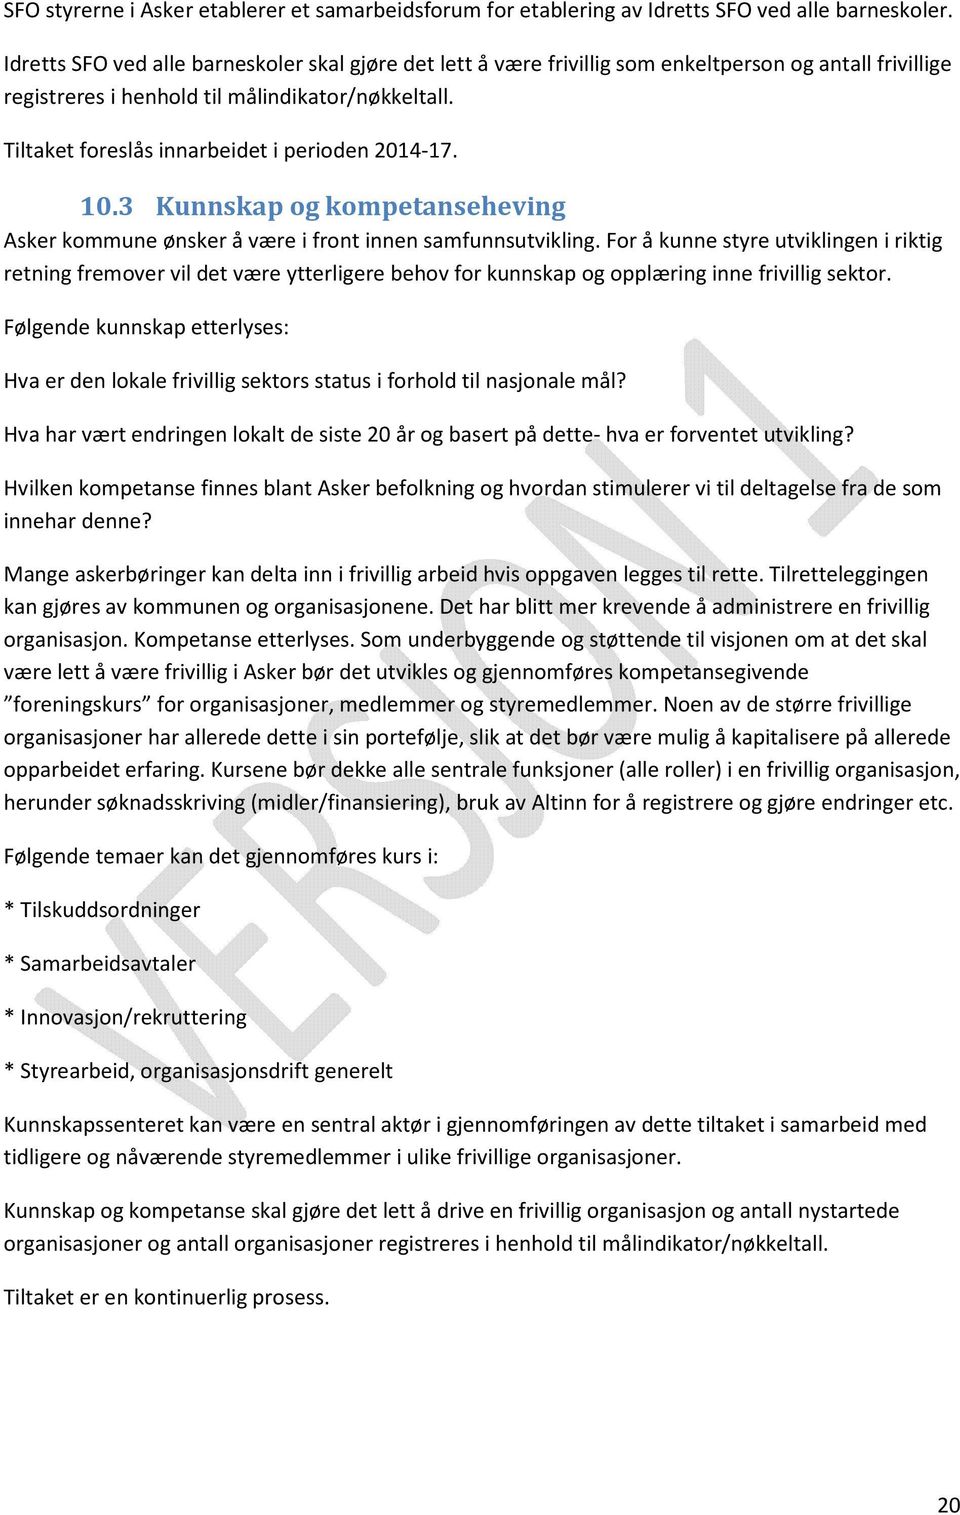 Tiltaket foreslås innarbeidet i perioden 2014-17. 10.3 Kunnskap og kompetanseheving Asker kommune ønsker å være i front innen samfunnsutvikling.